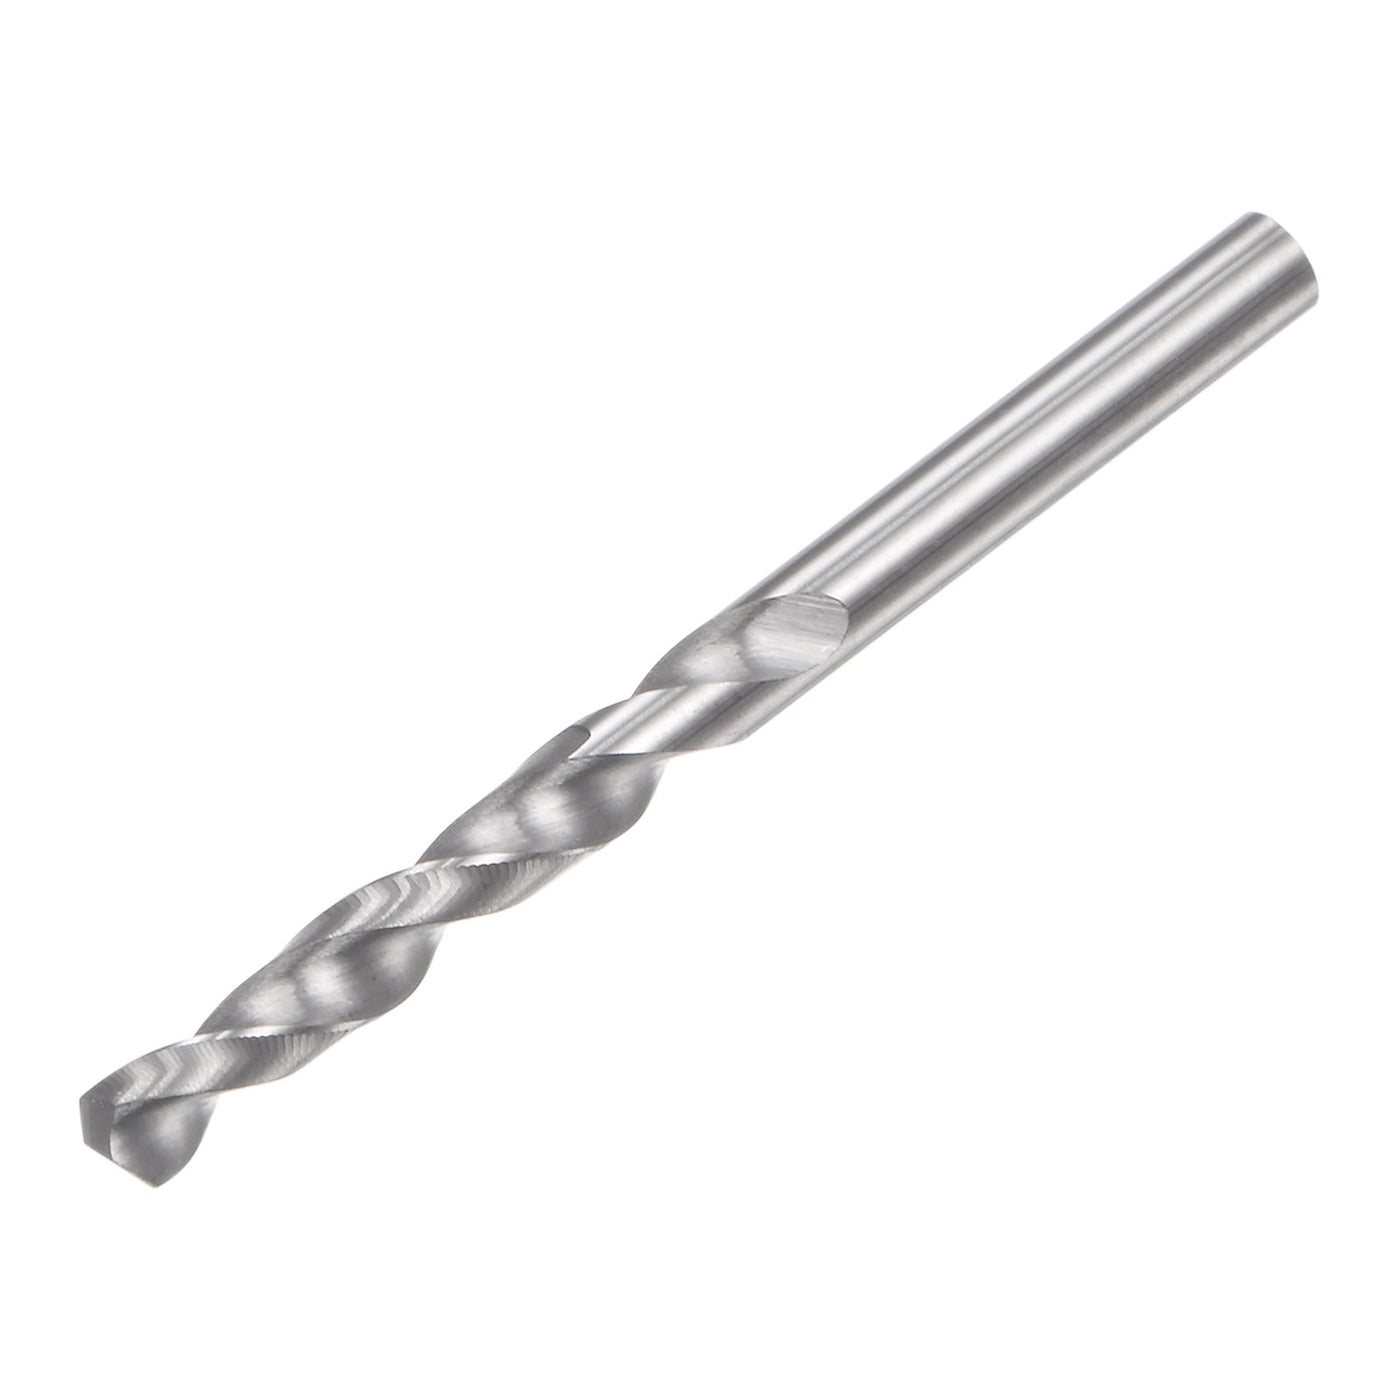 uxcell Uxcell 3mm C2/K20 Tungsten Carbide Straight Shank Spiral Flutes Twist Drill Bit